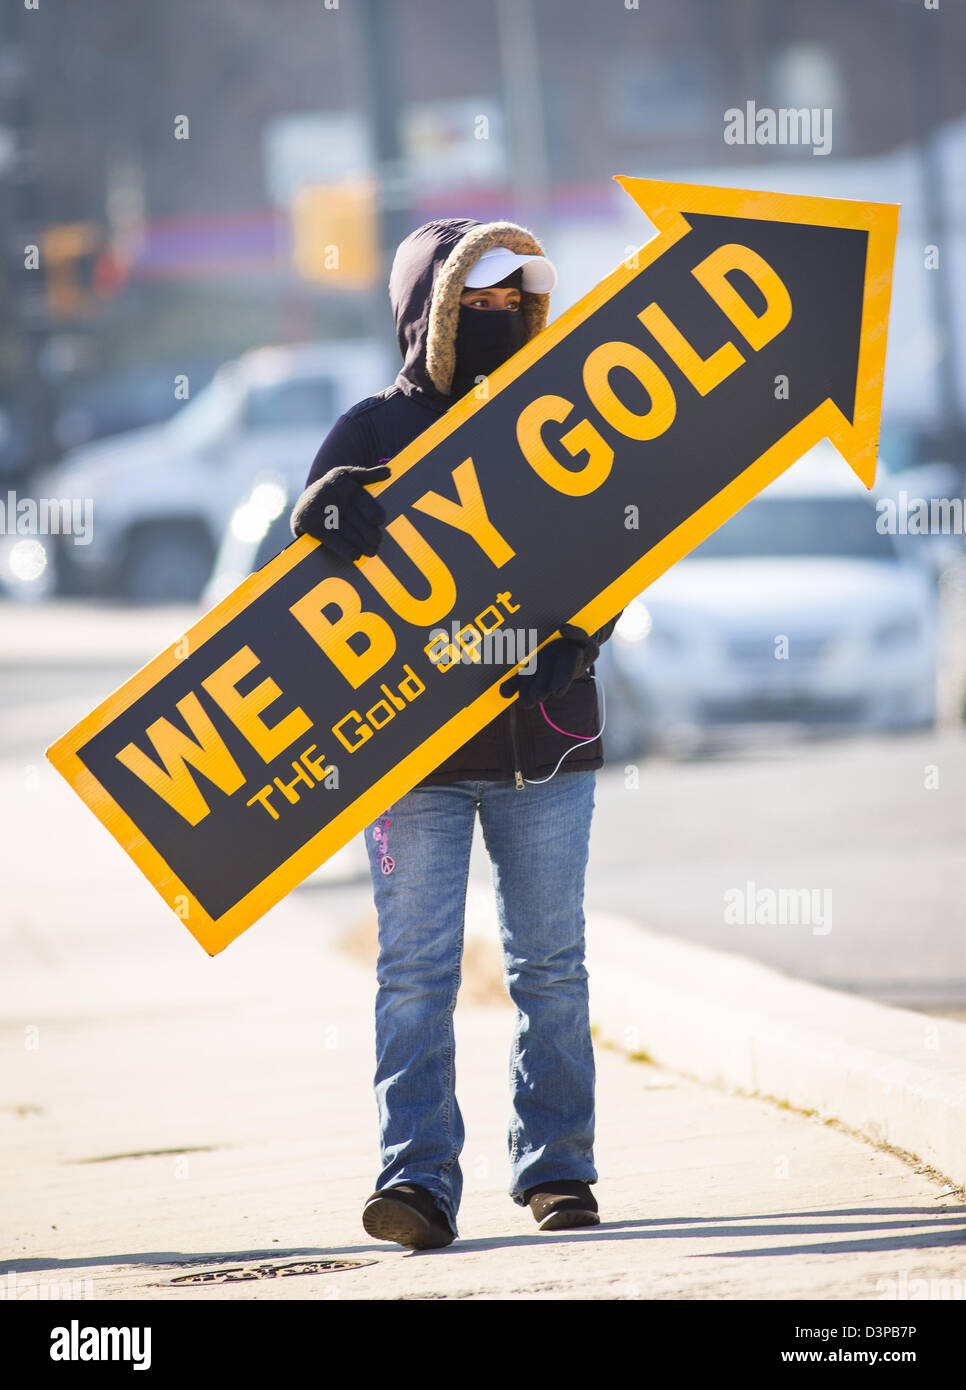 ARLINGTON, VIRGINIA, USA - Frau hält wir kaufen Gold Schild auf Bürgersteig, Kunden zu gewinnen. Stockfoto